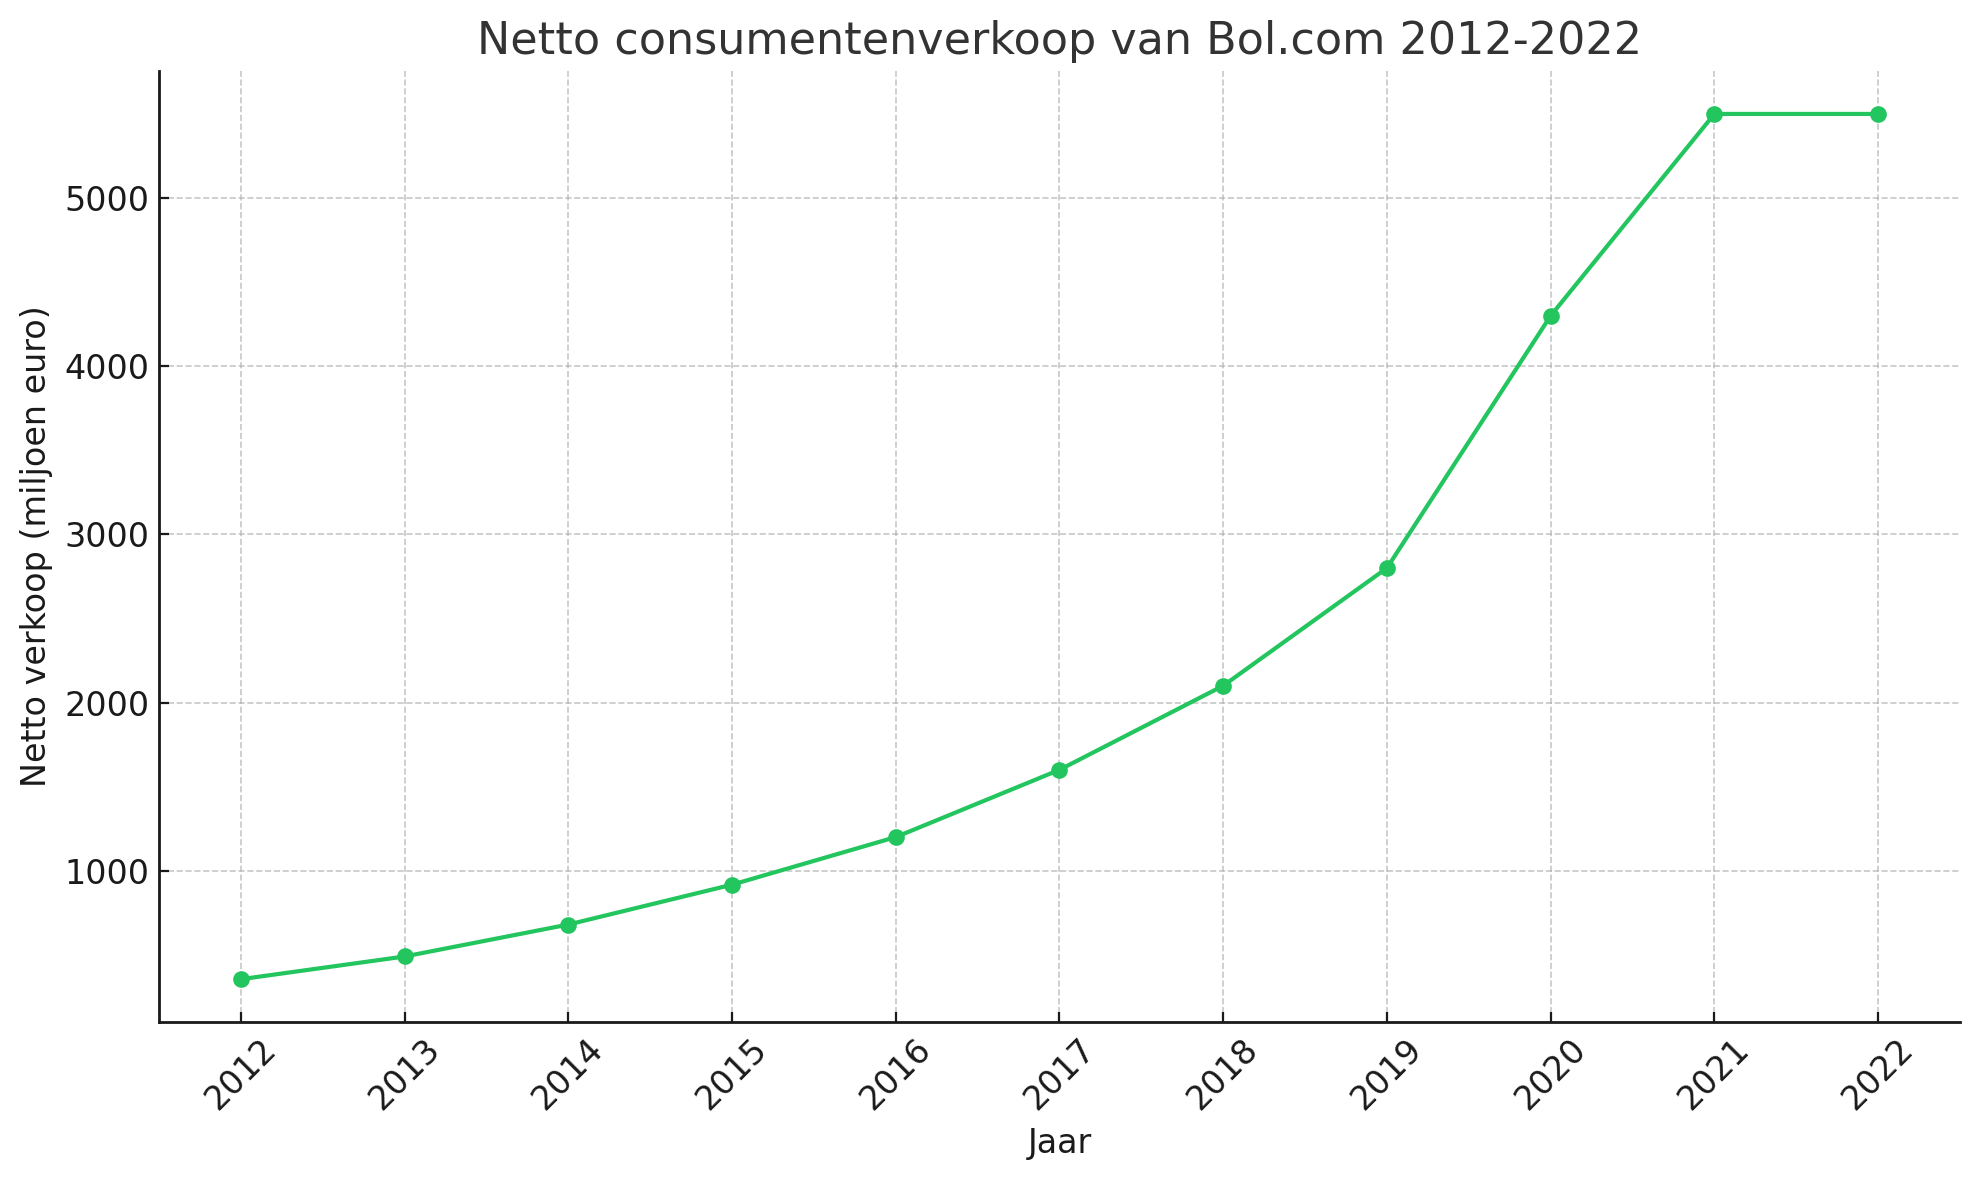 Netto consumentenverkoop van Bol.com